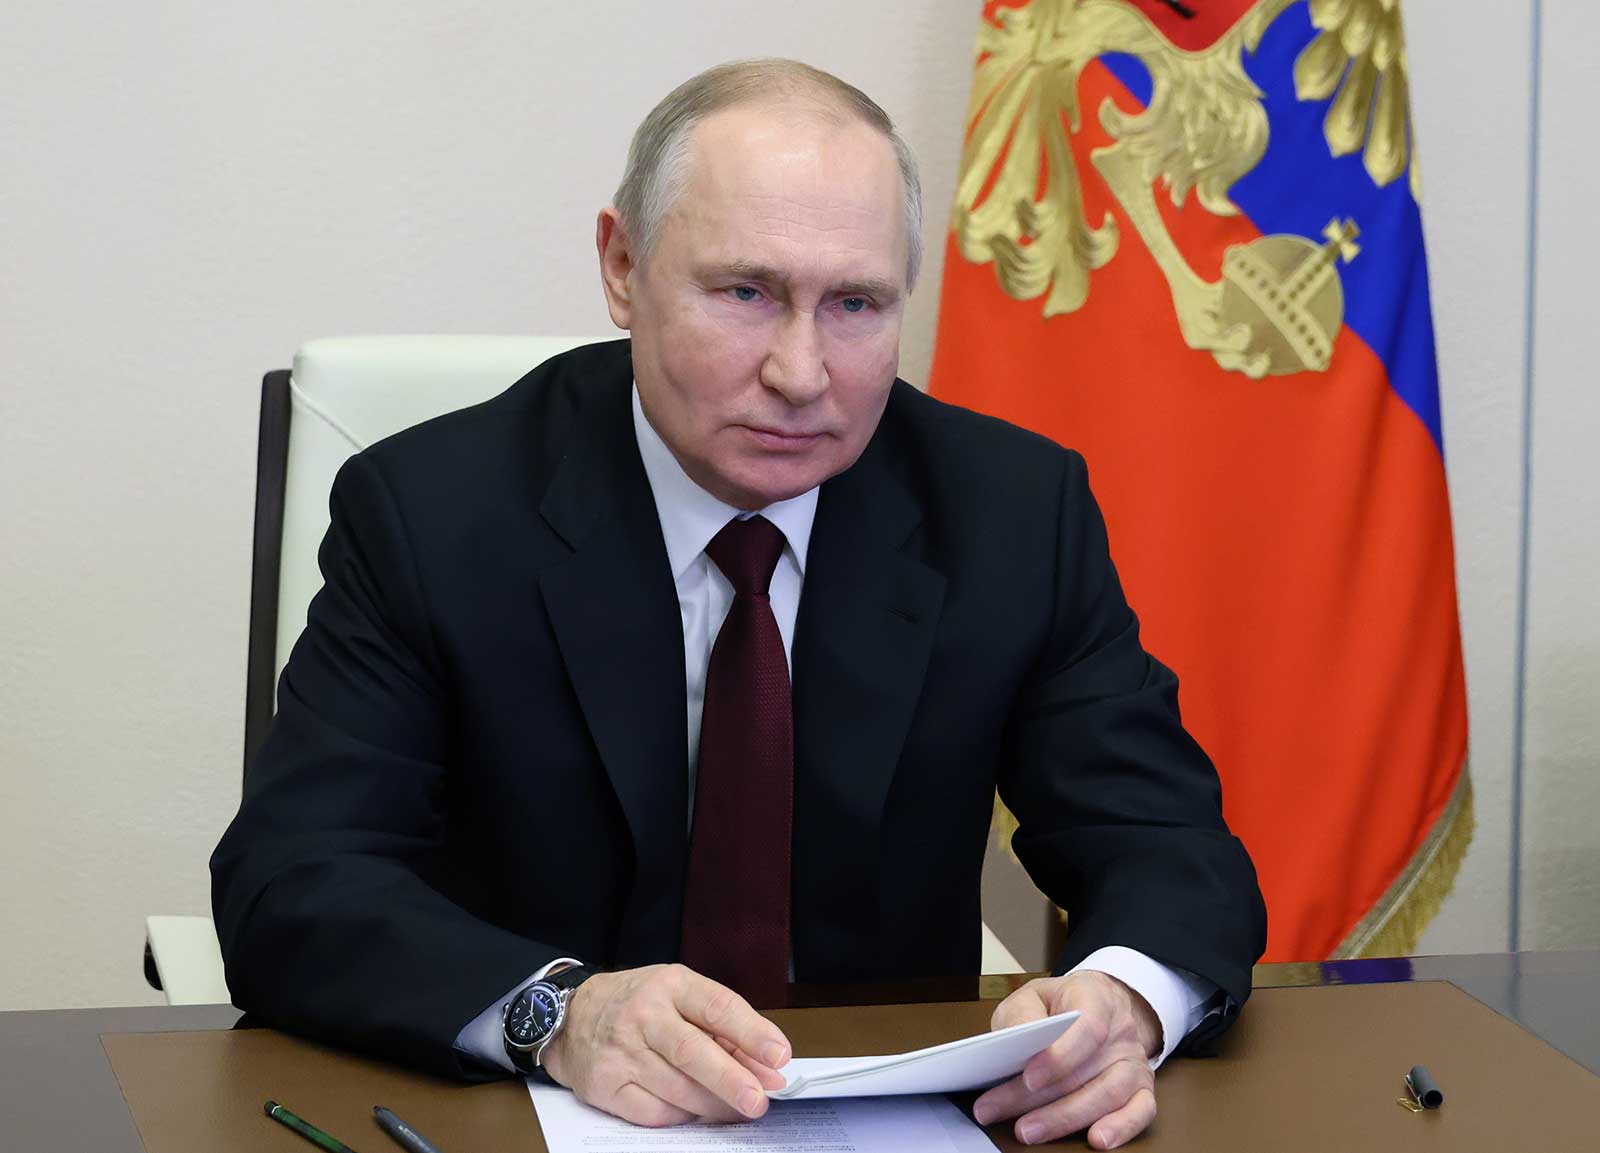 بوتين يوقع على قانون يعاقب المخربين بالسجن المؤبد